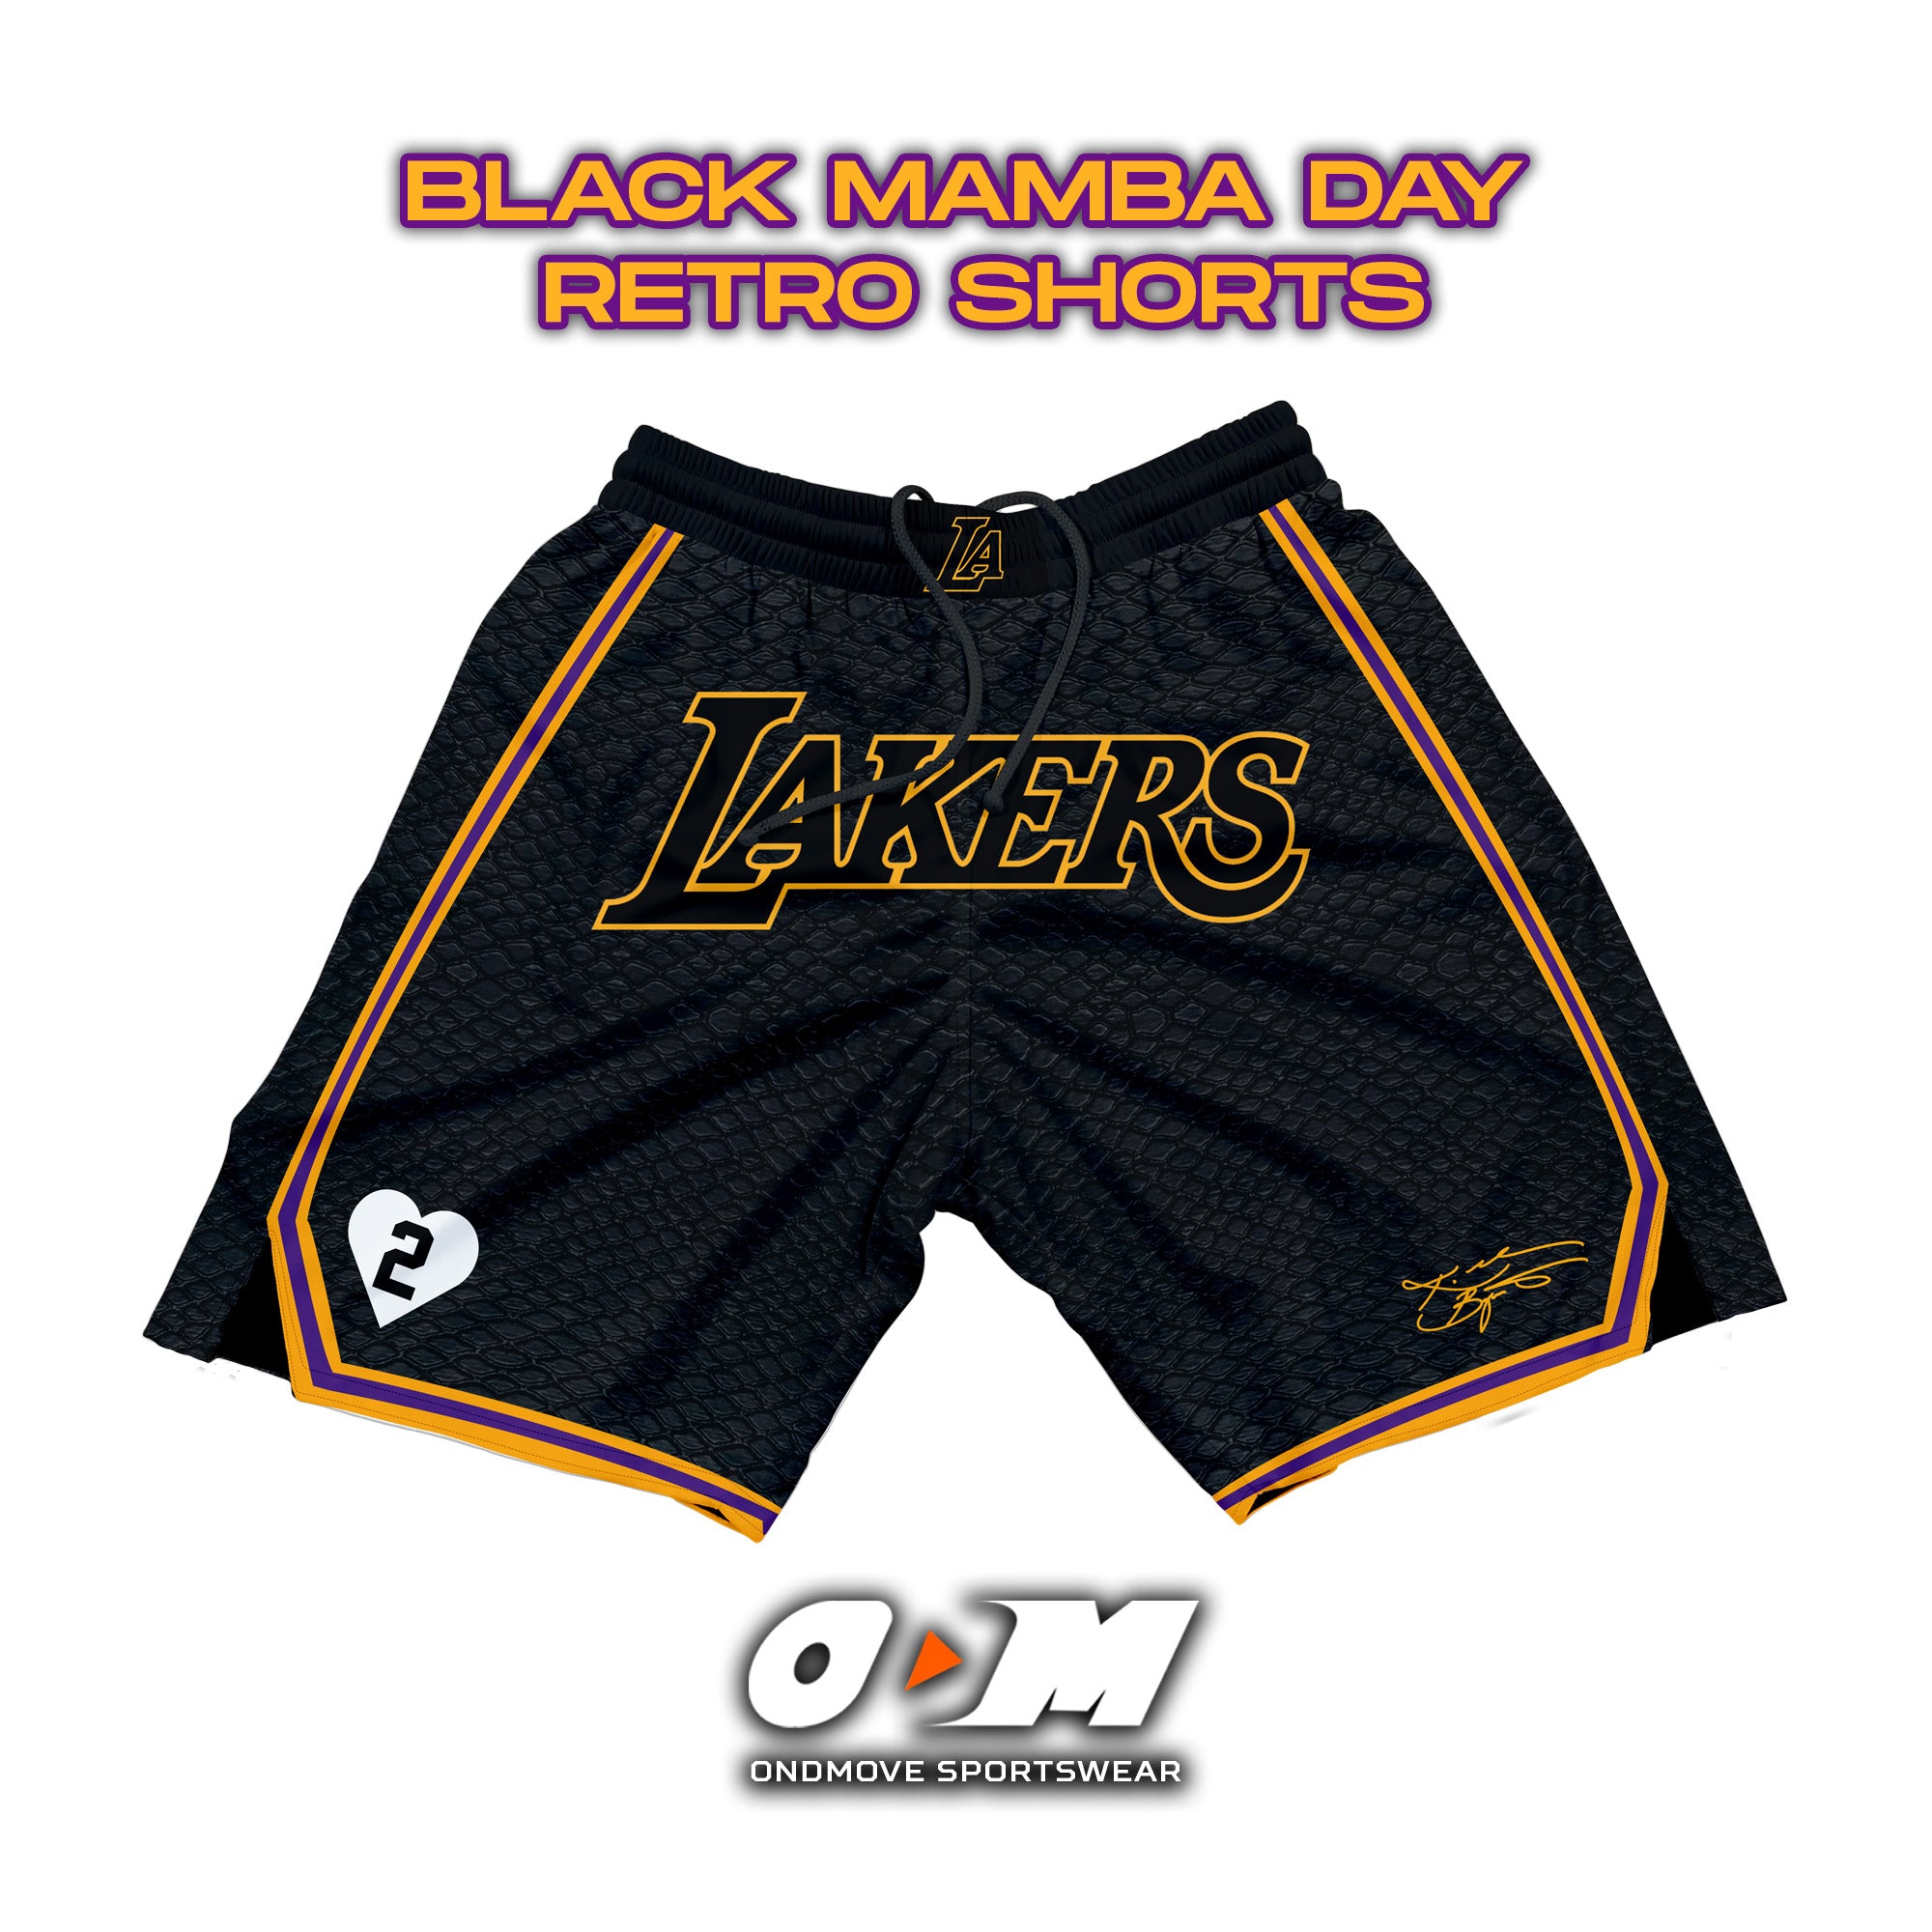 Black Mamba Day Retro Shorts